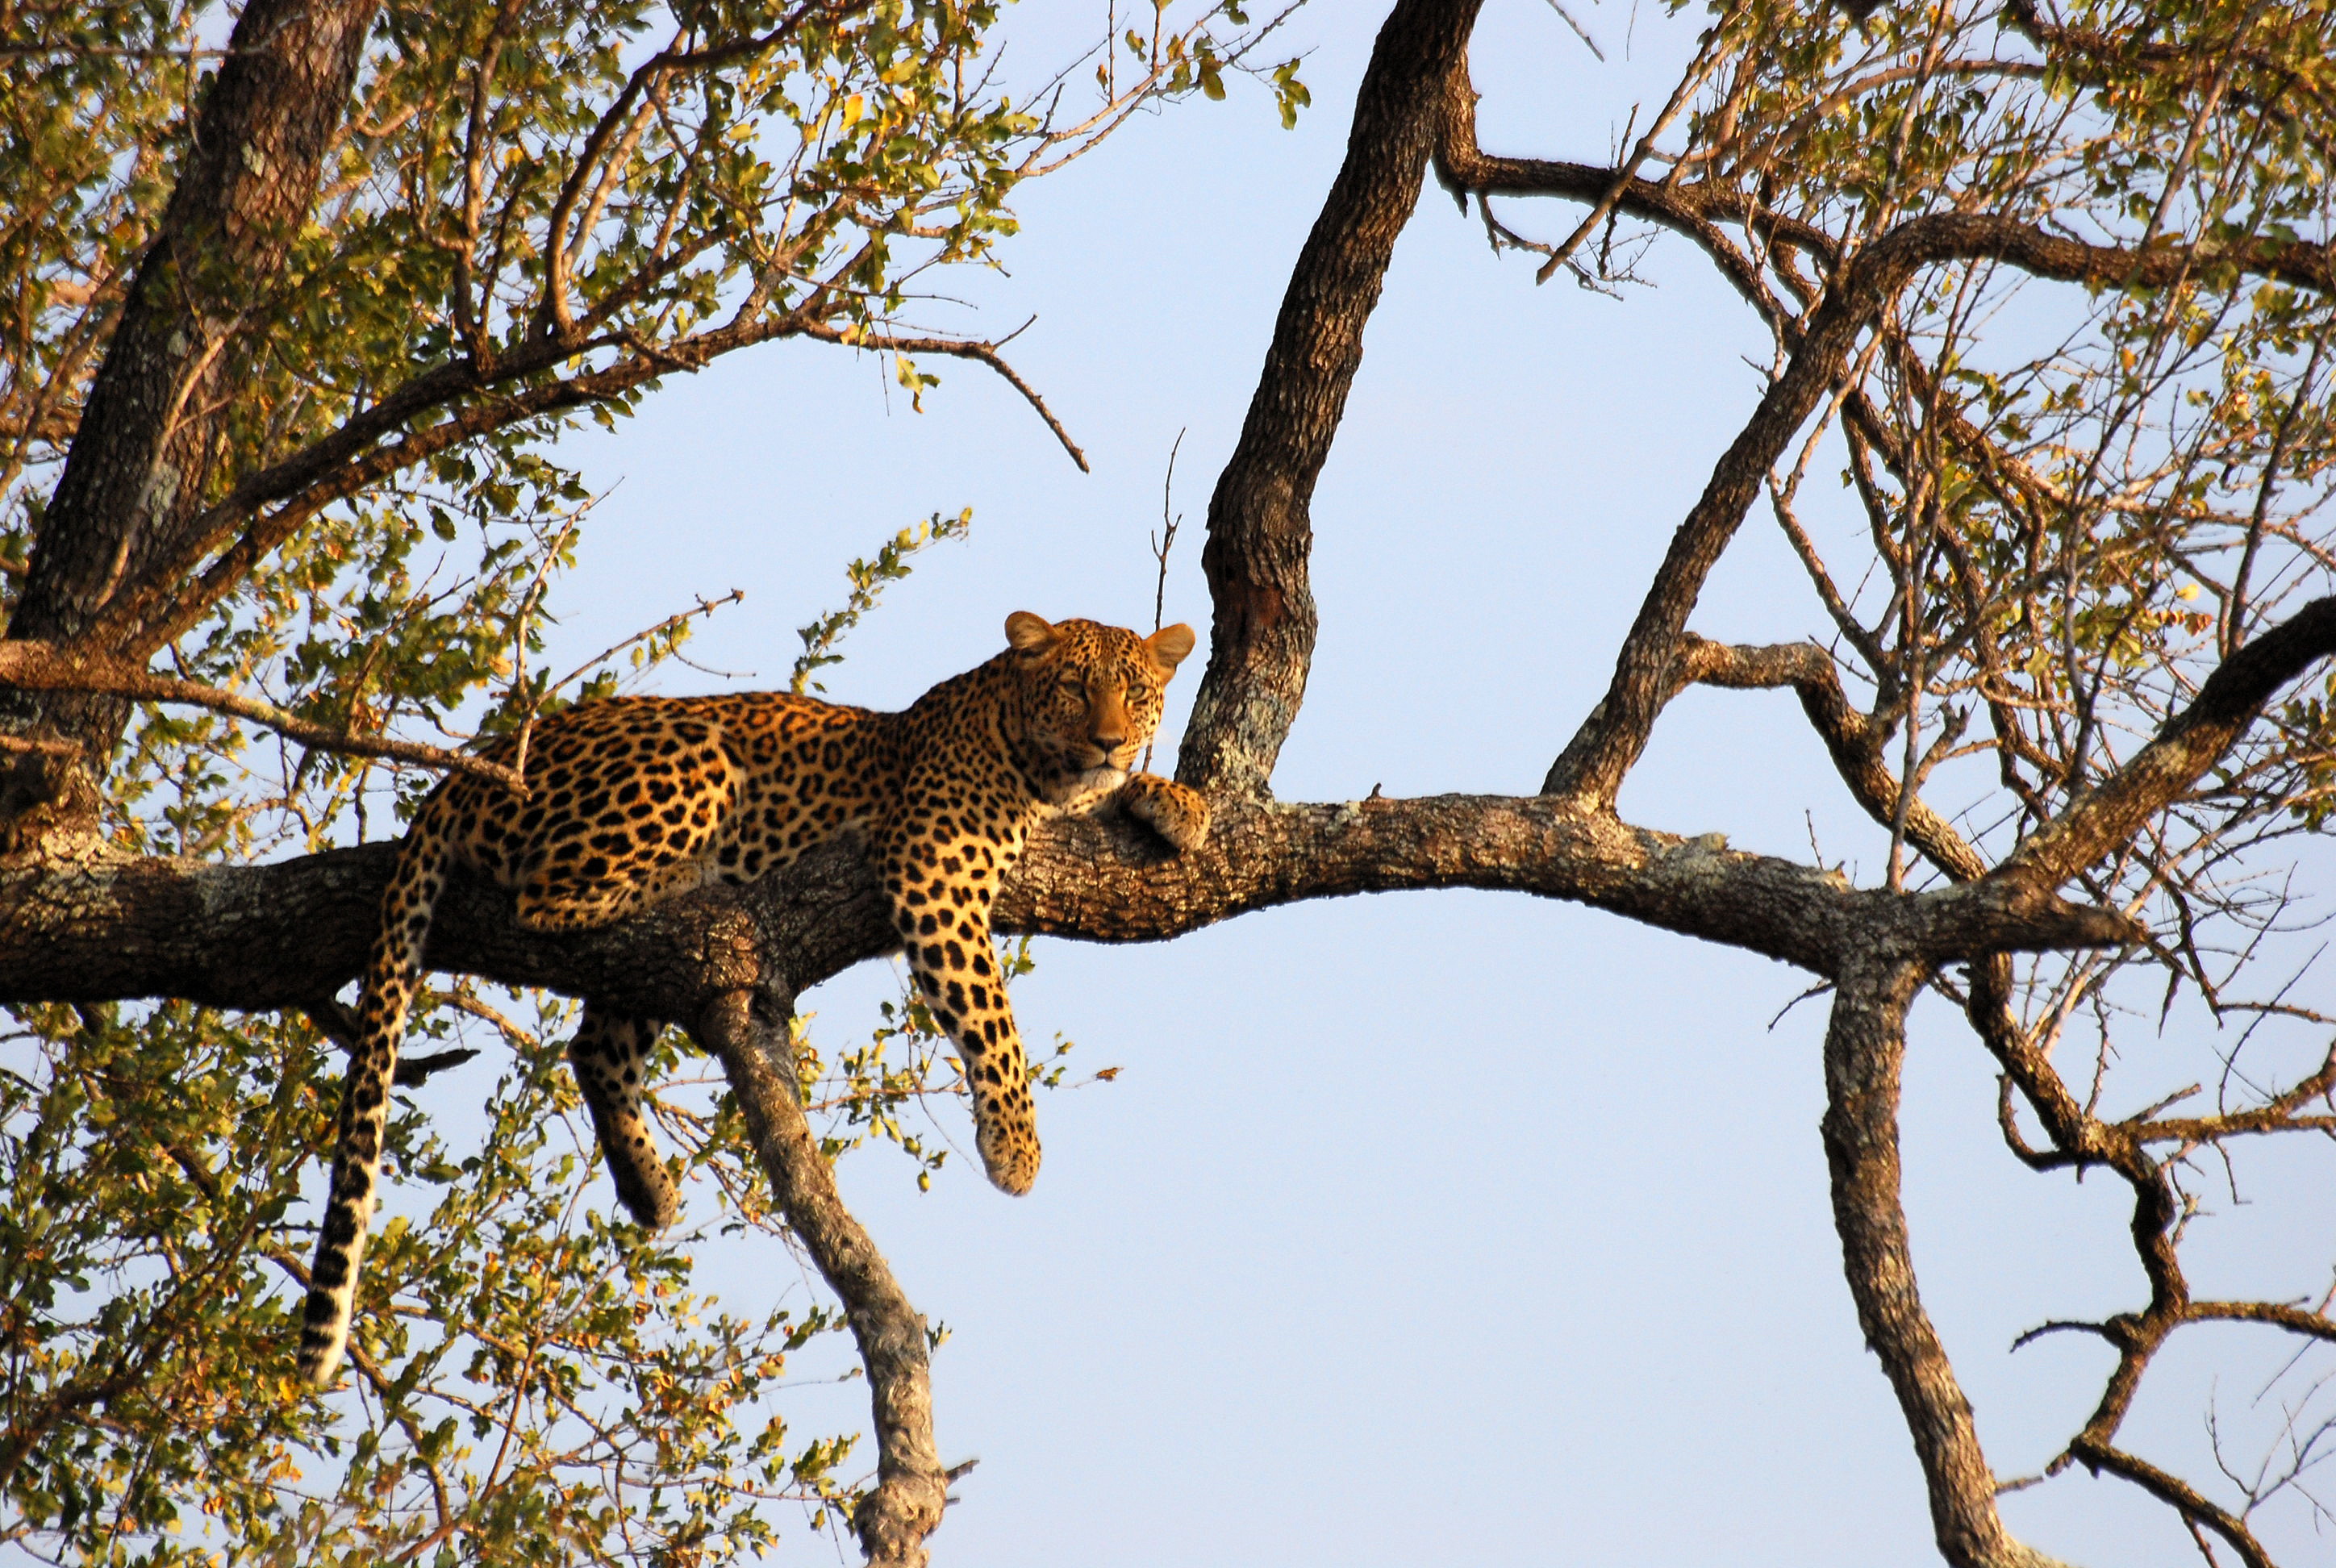 File:Leopard on tree.JPG - Wikimedia Commons